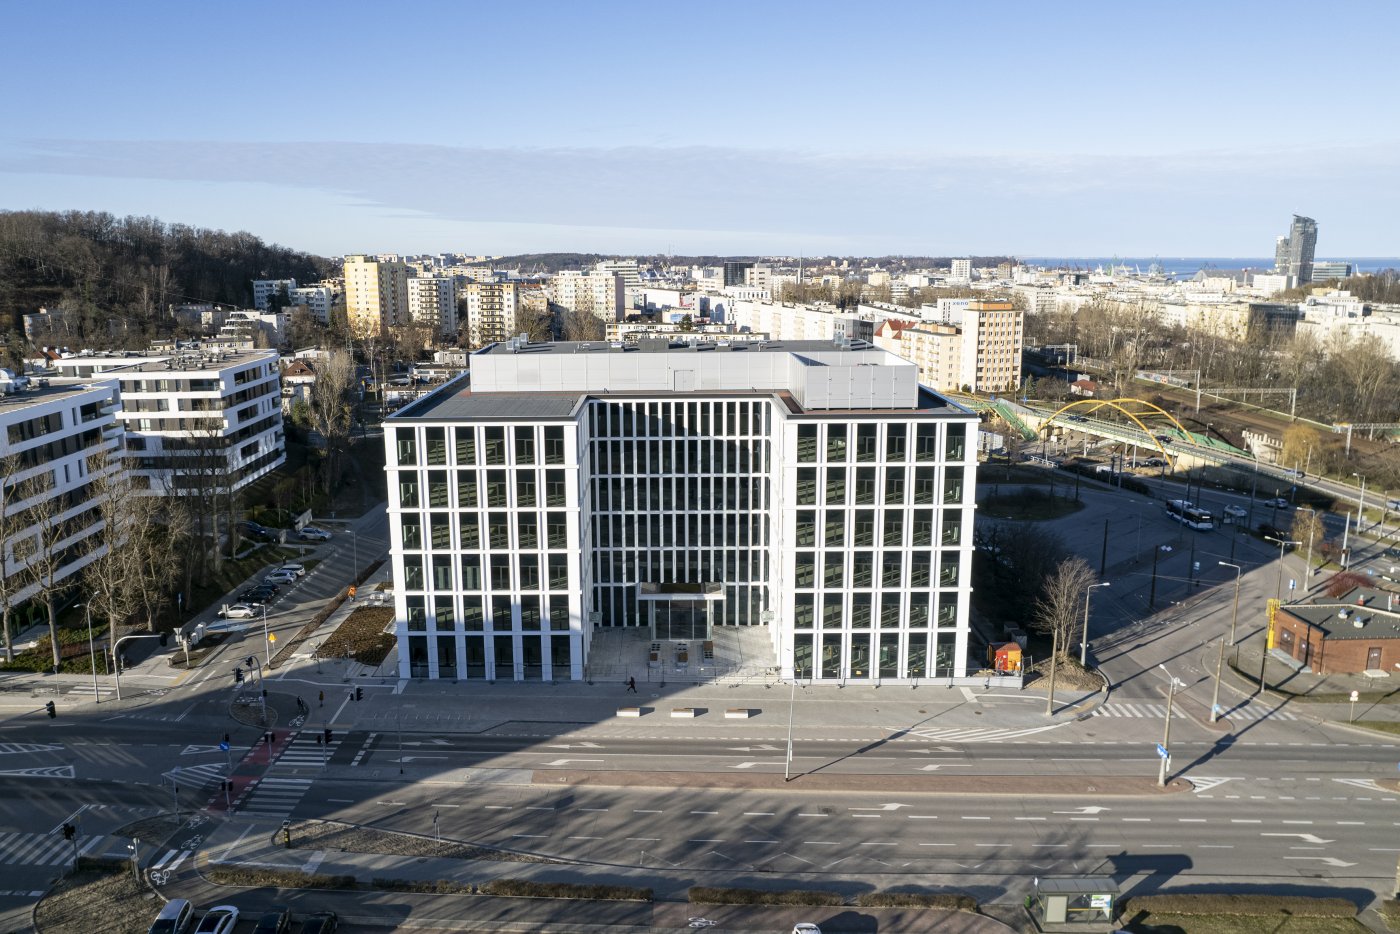 Biurowiec K2 przy ul. Kieleckiej w Gdyni - to inwestycja biurowa, dzięki której Trójmiasto przekroczyło symboliczną barierę 1 miliona metrów kwadratowych biur, fot. mat. prasowe Vastint Poland